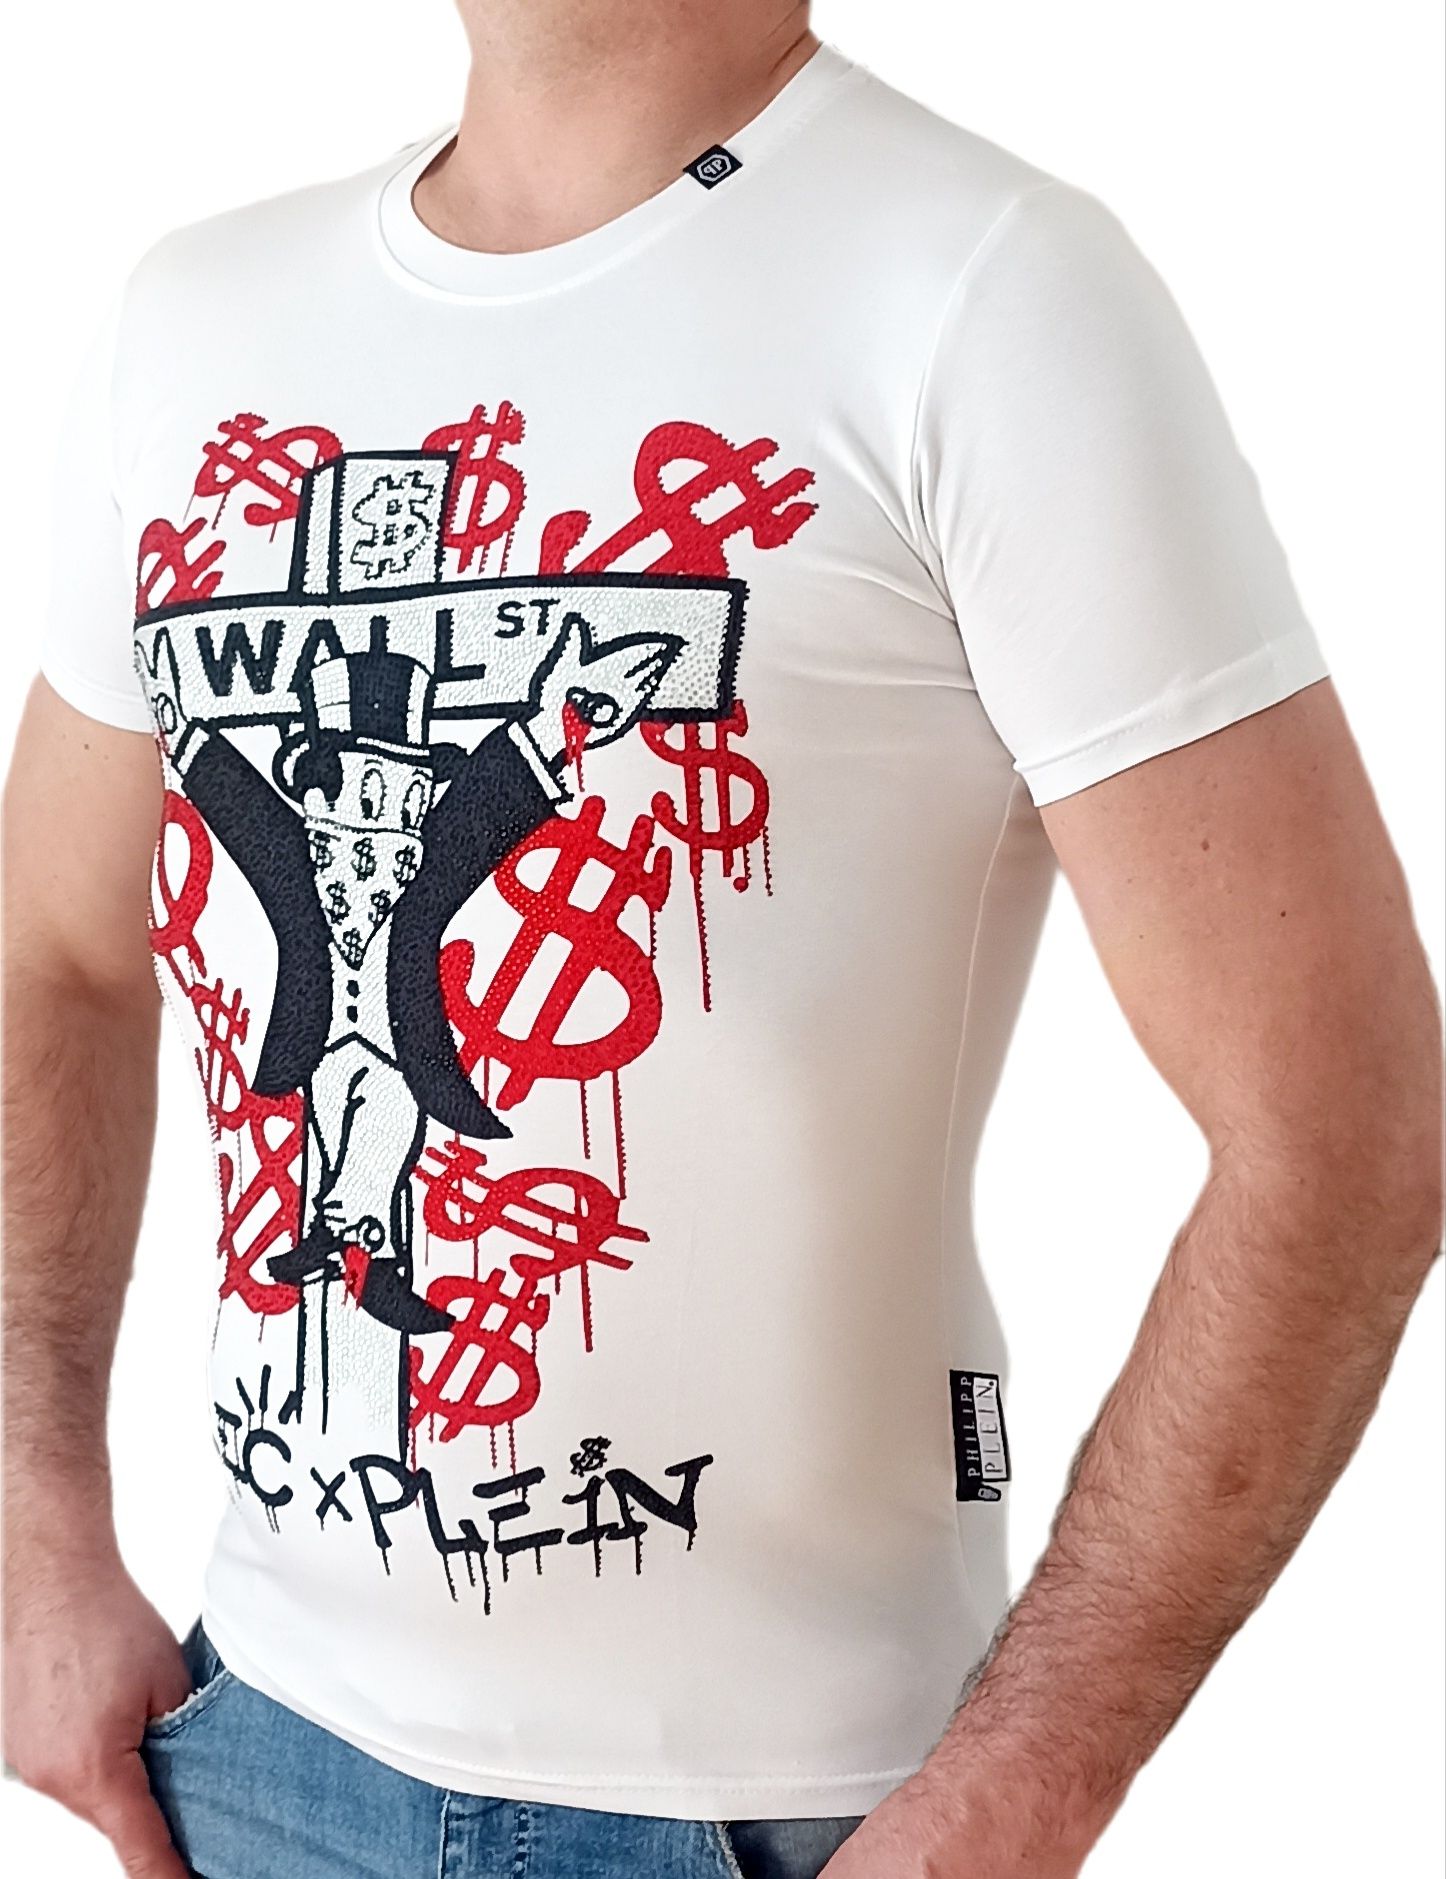 Philipp Plein t-shirt koszulka r.S,M,L,XL,XXL